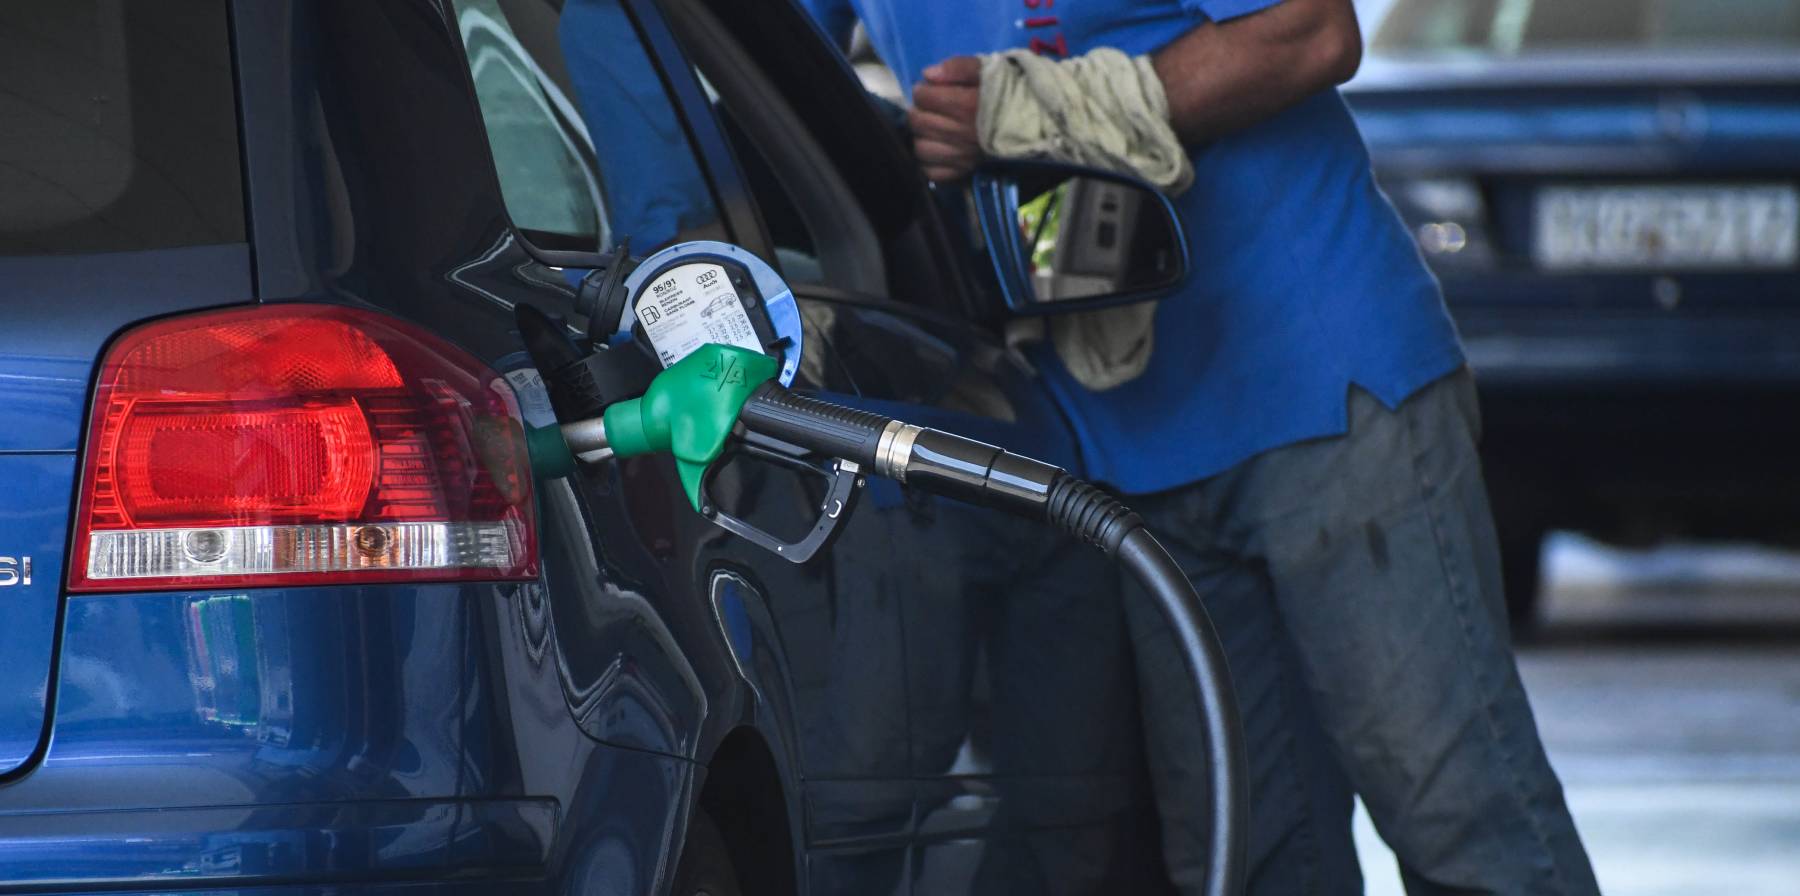 Καύσιμα - Νέα μέτρα: Πόσο θα μειωθεί η τιμή βενζίνης και πετρελαίου